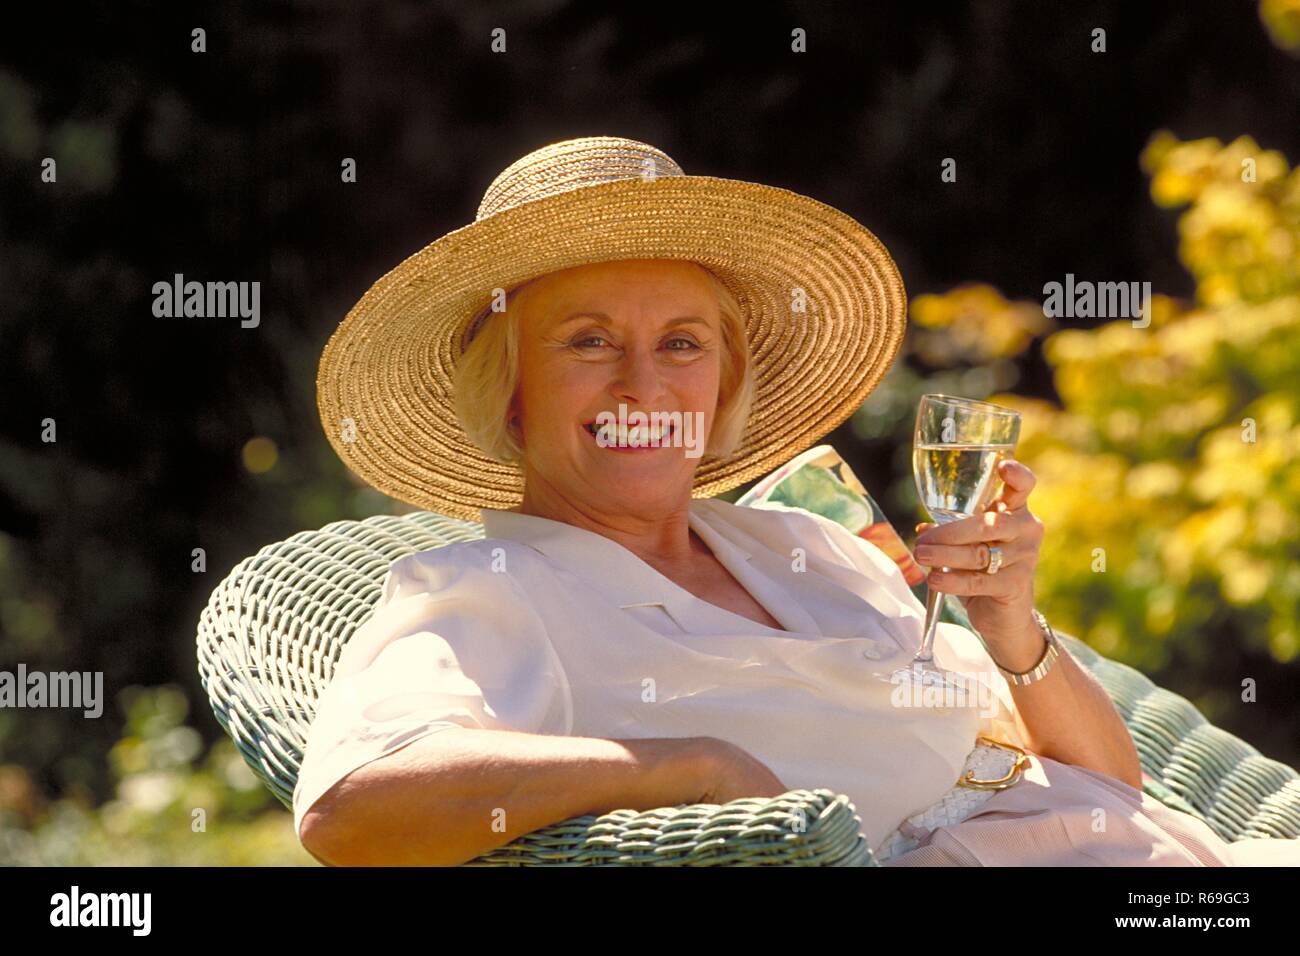 Outdoor, Portrait, blonde Frau Mitte 60 bekleidet mit weisser Bluse und Strohhut sitzt mit einem Glas Sekt auf einem Korbsessel im Garten Stock Photo